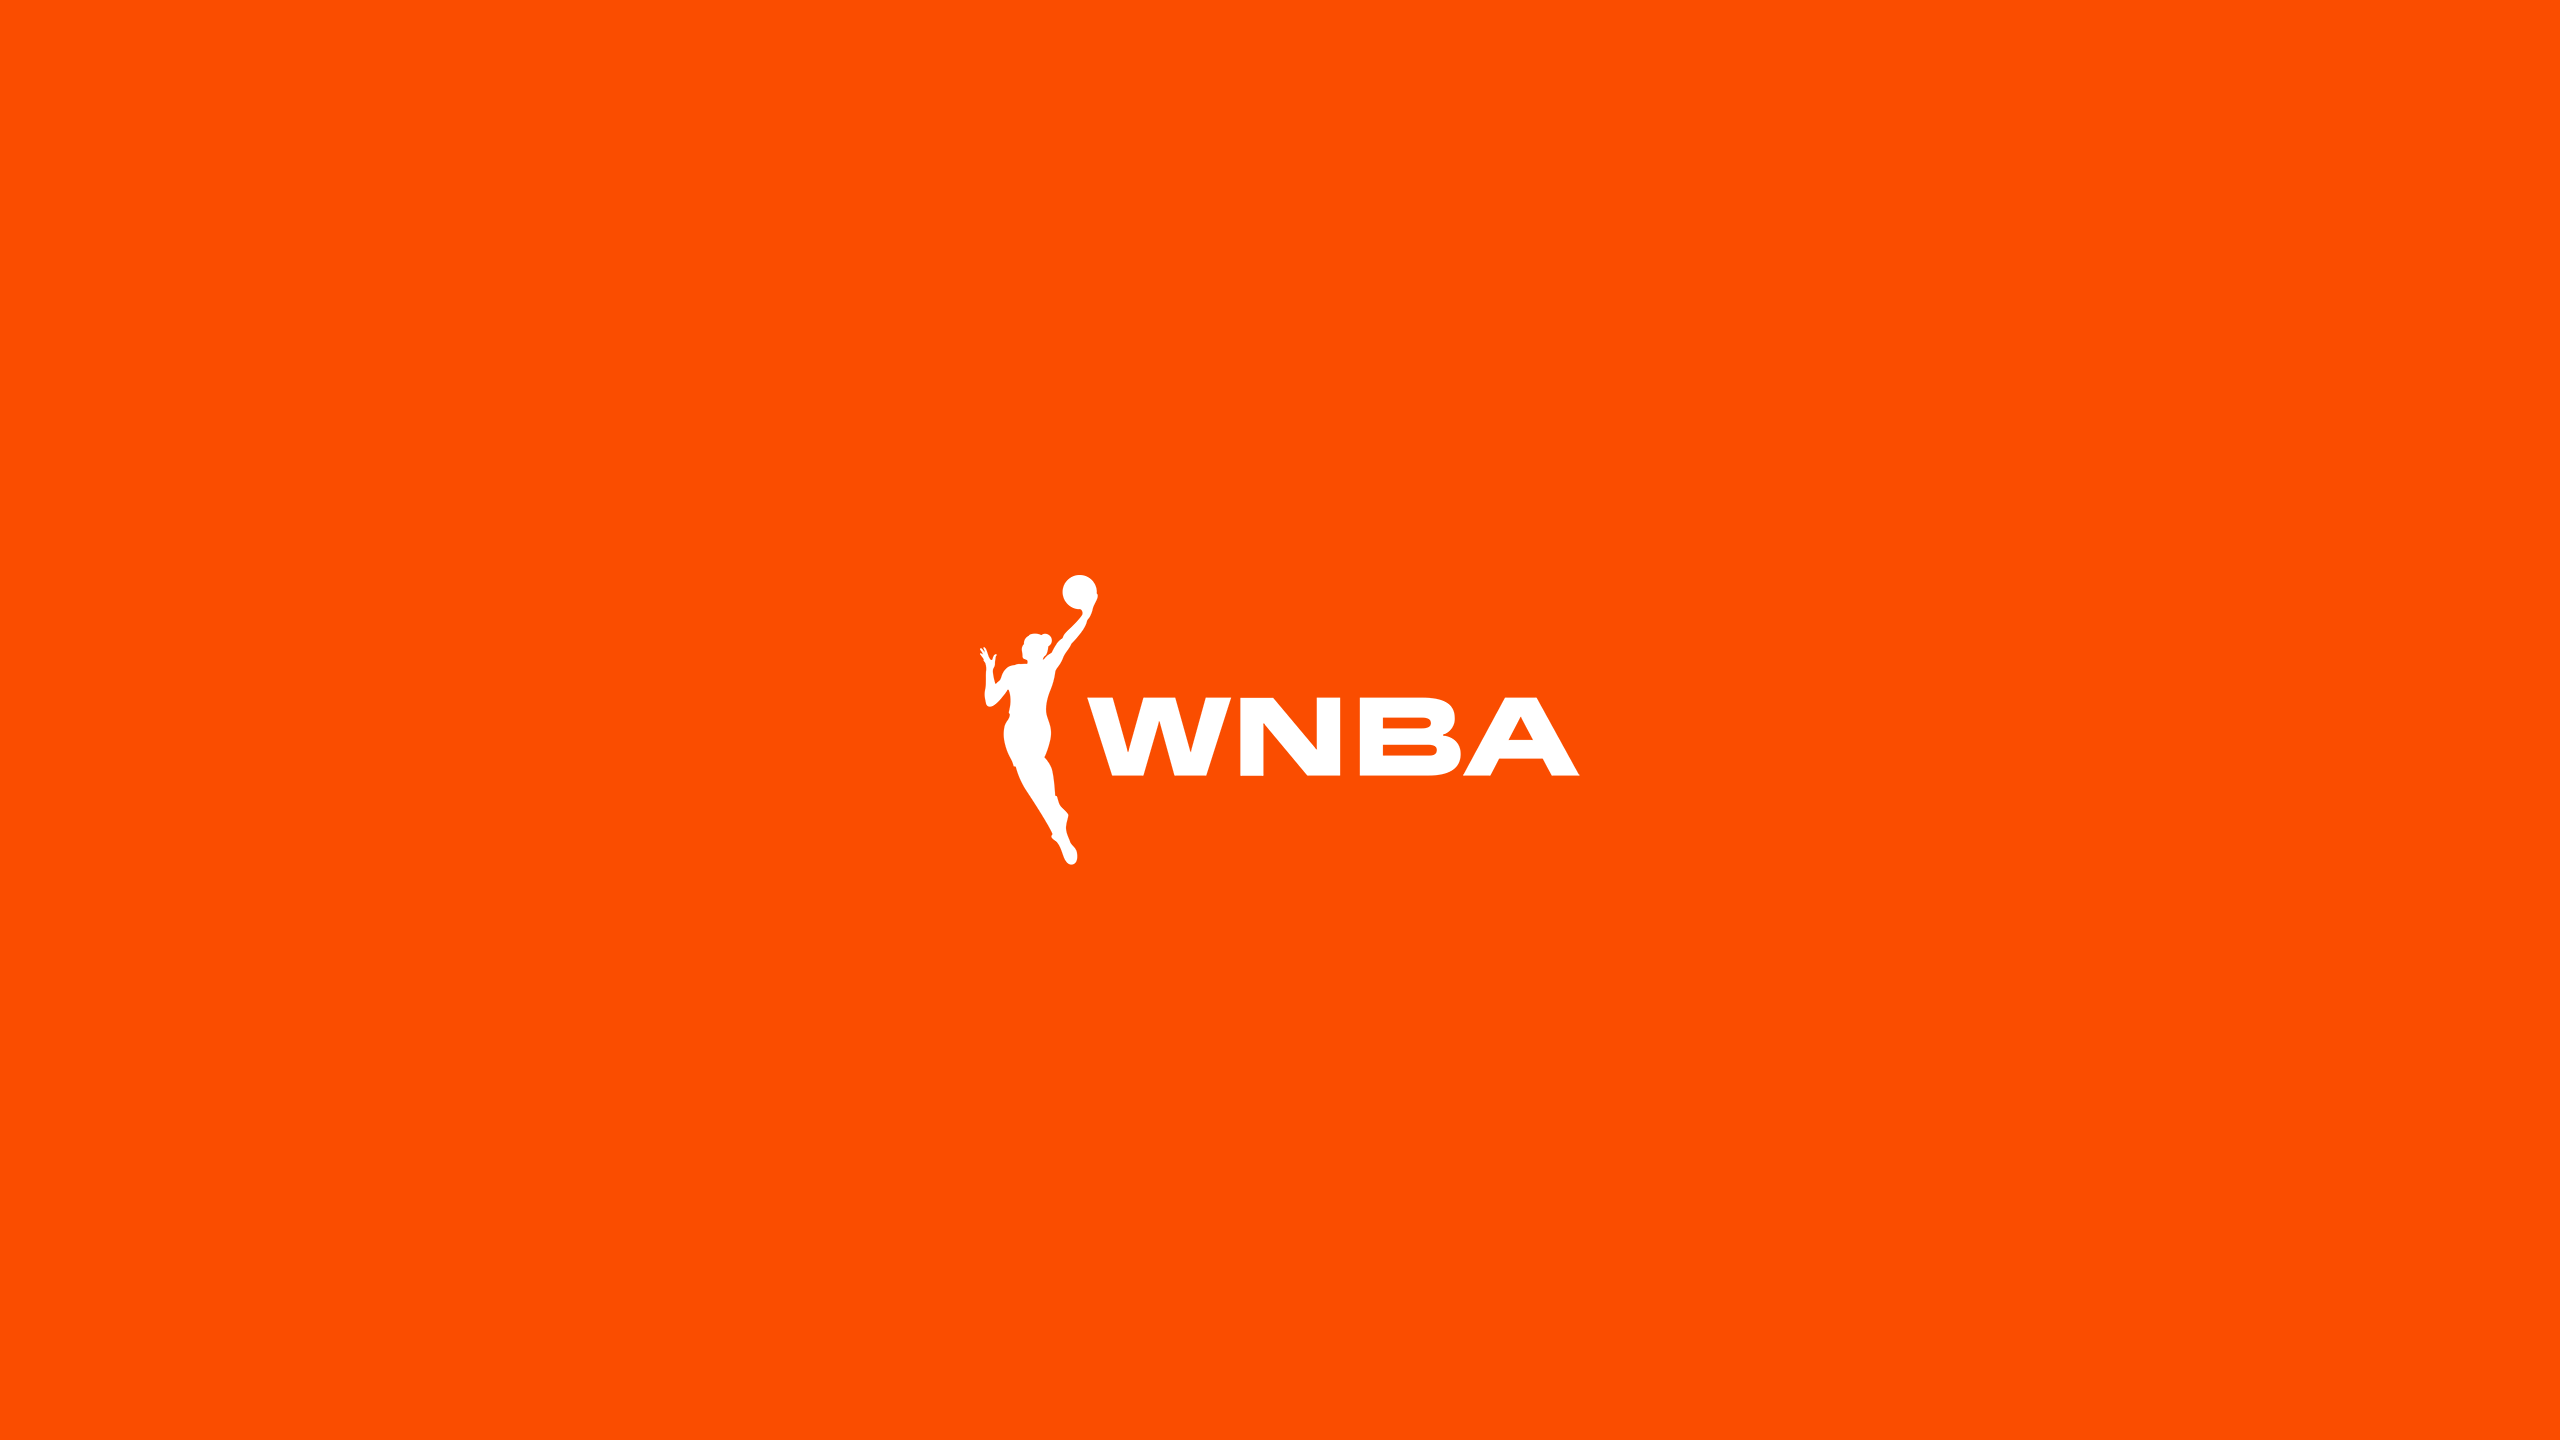 WNBA - Basketball - Square Bettor